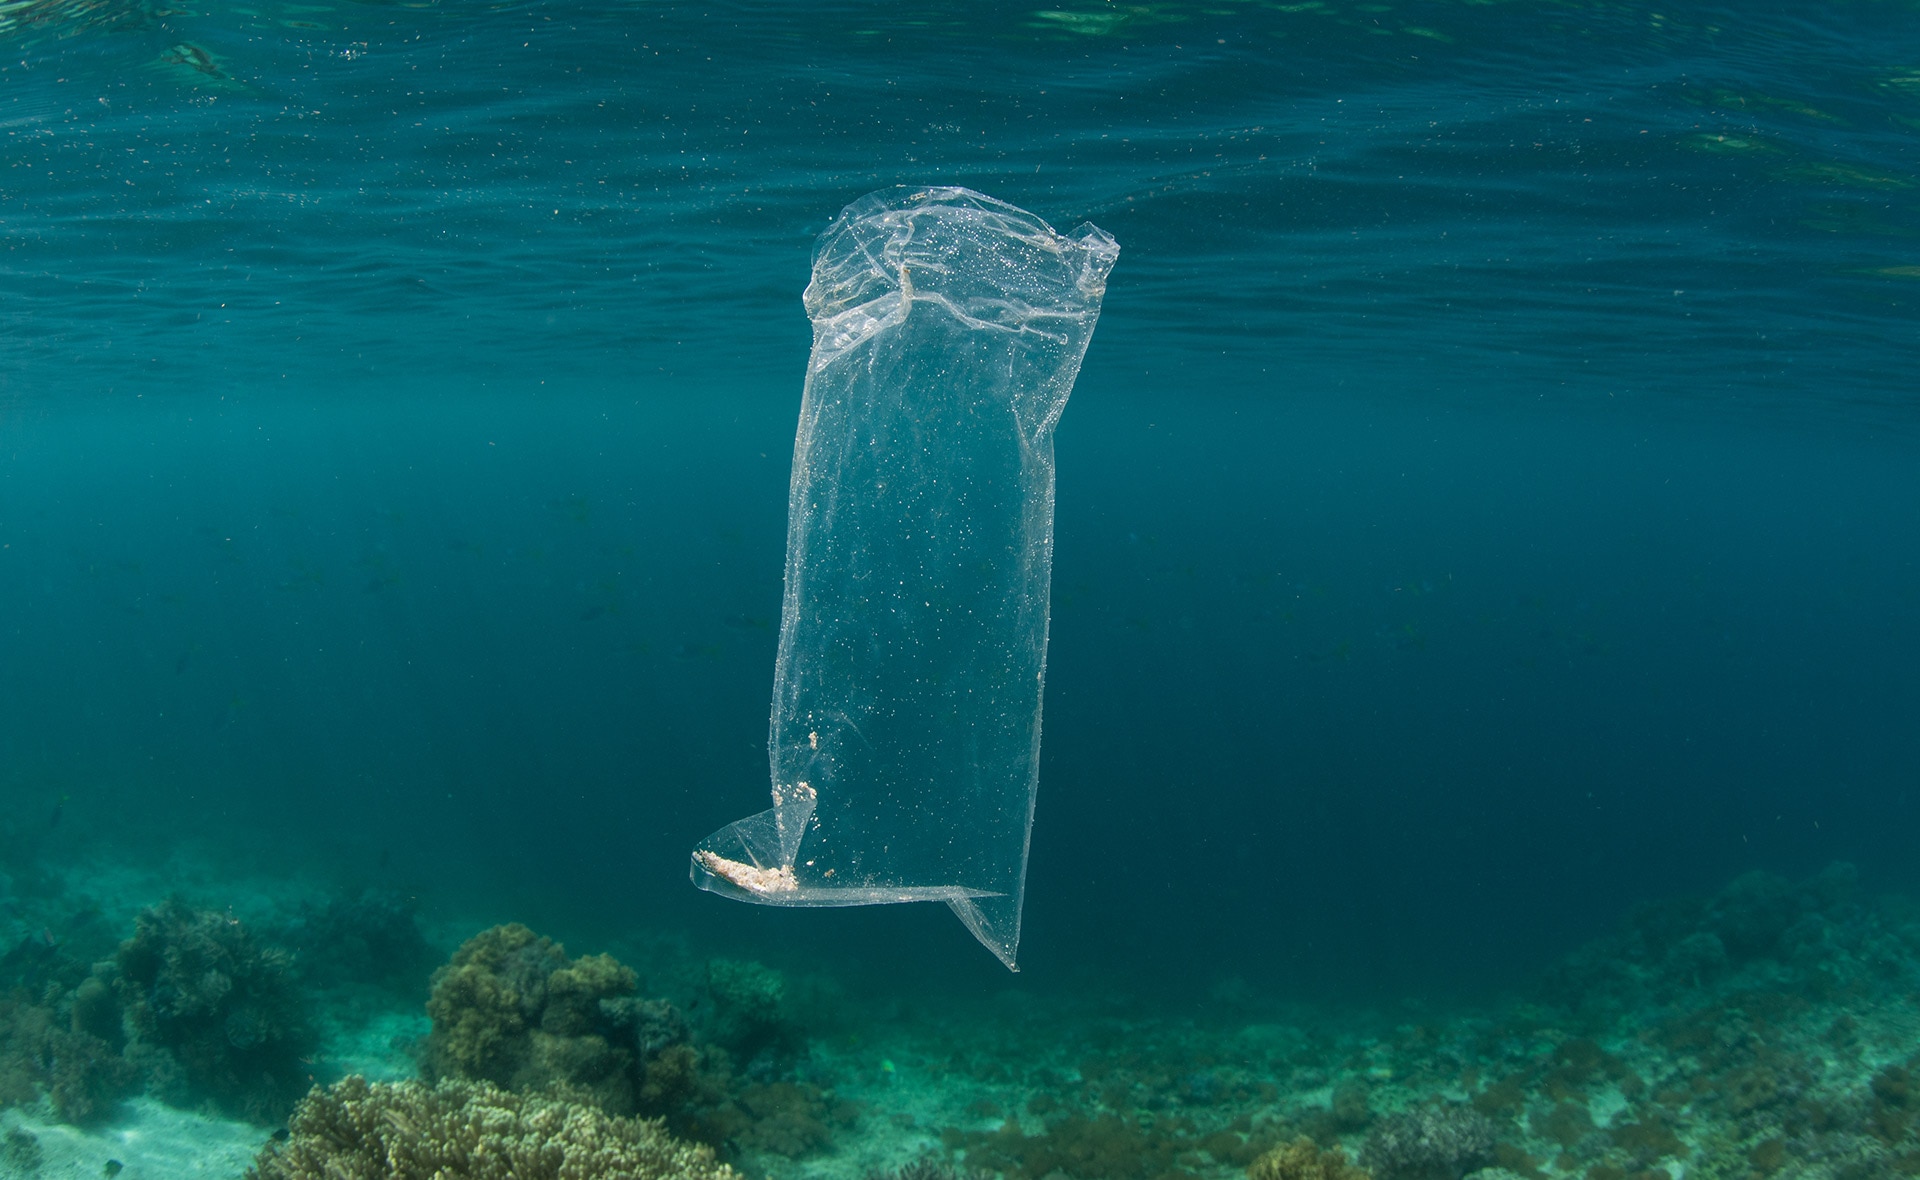 Como reciclar las bolsas de plástico correctamente y no contaminar